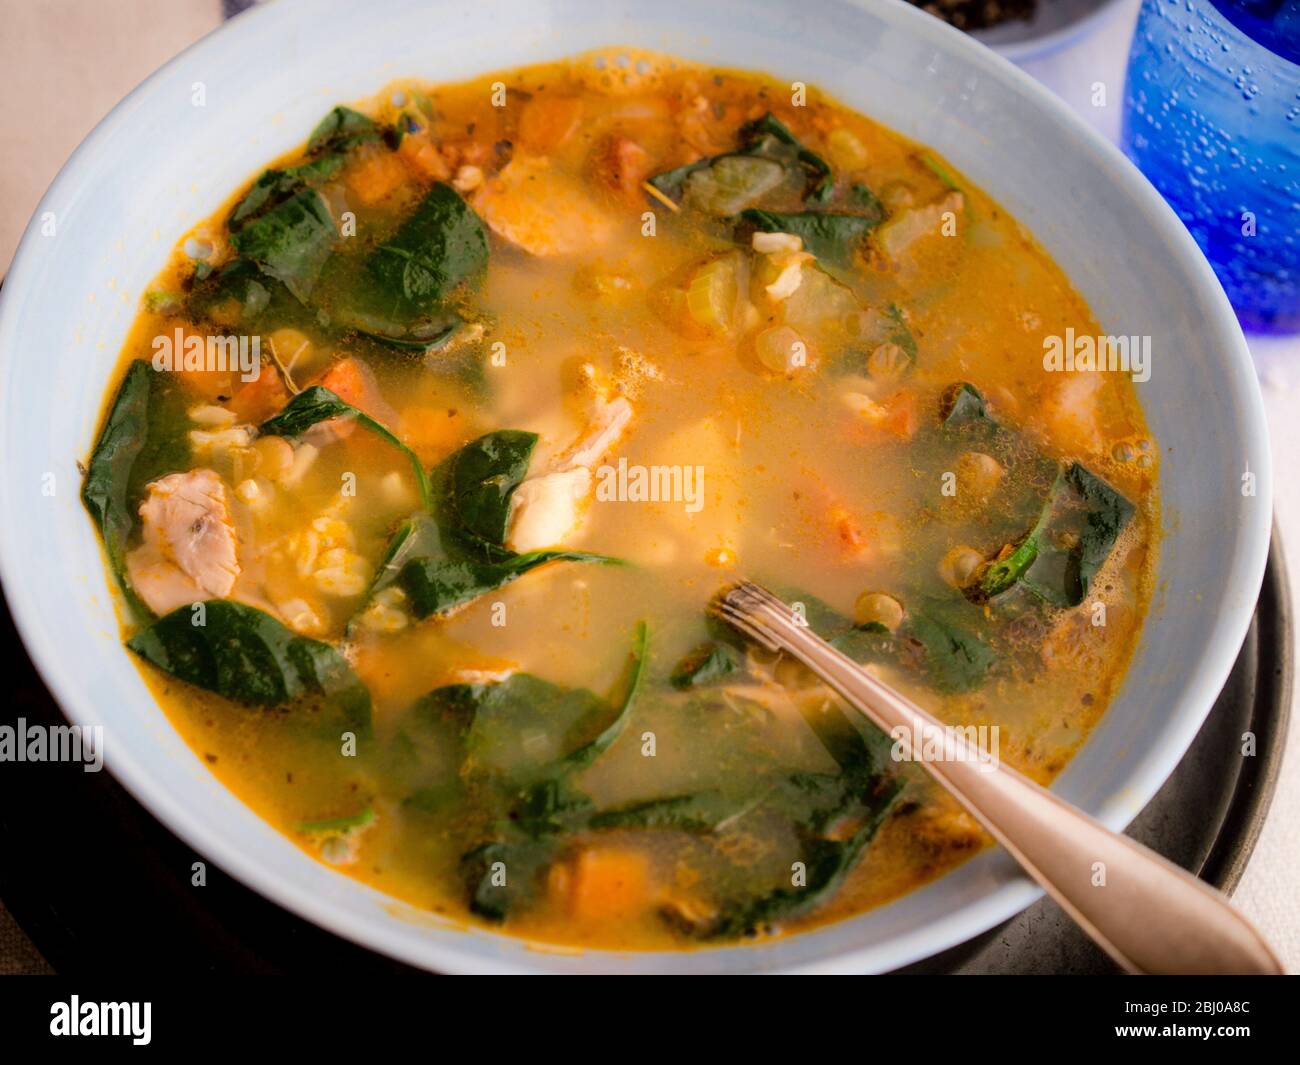 Repas complet Soupe de poulet, chorizo et légumes avec du riz brun, lentilles et épinards, servi dans un bol bleu pâle Banque D'Images